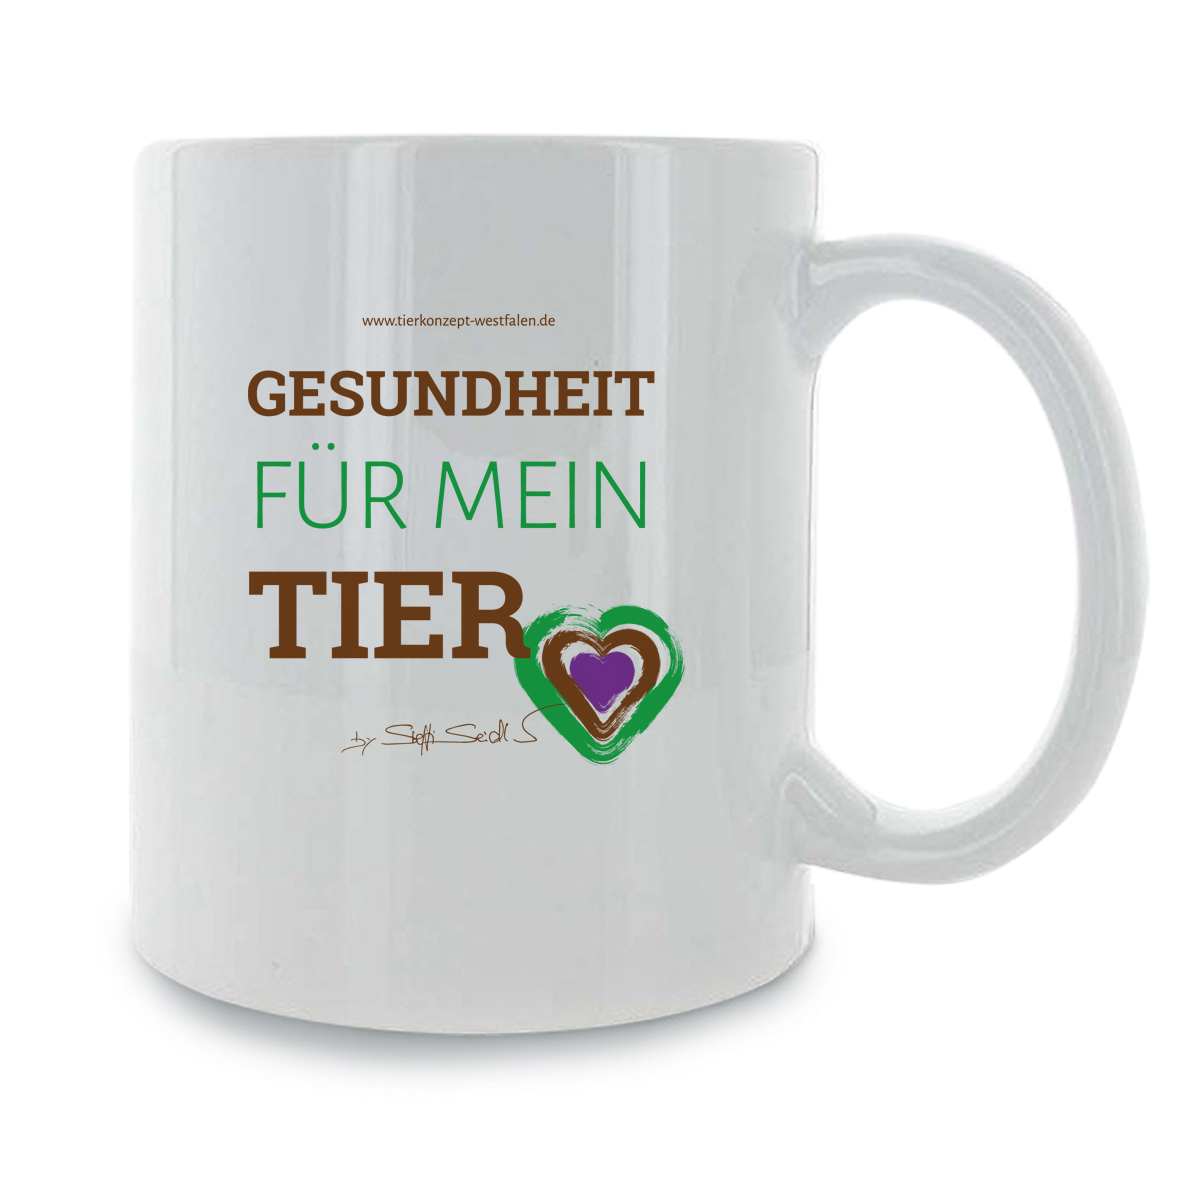 Tierkonzept Westfalen Kaffee Tasse "Herz"